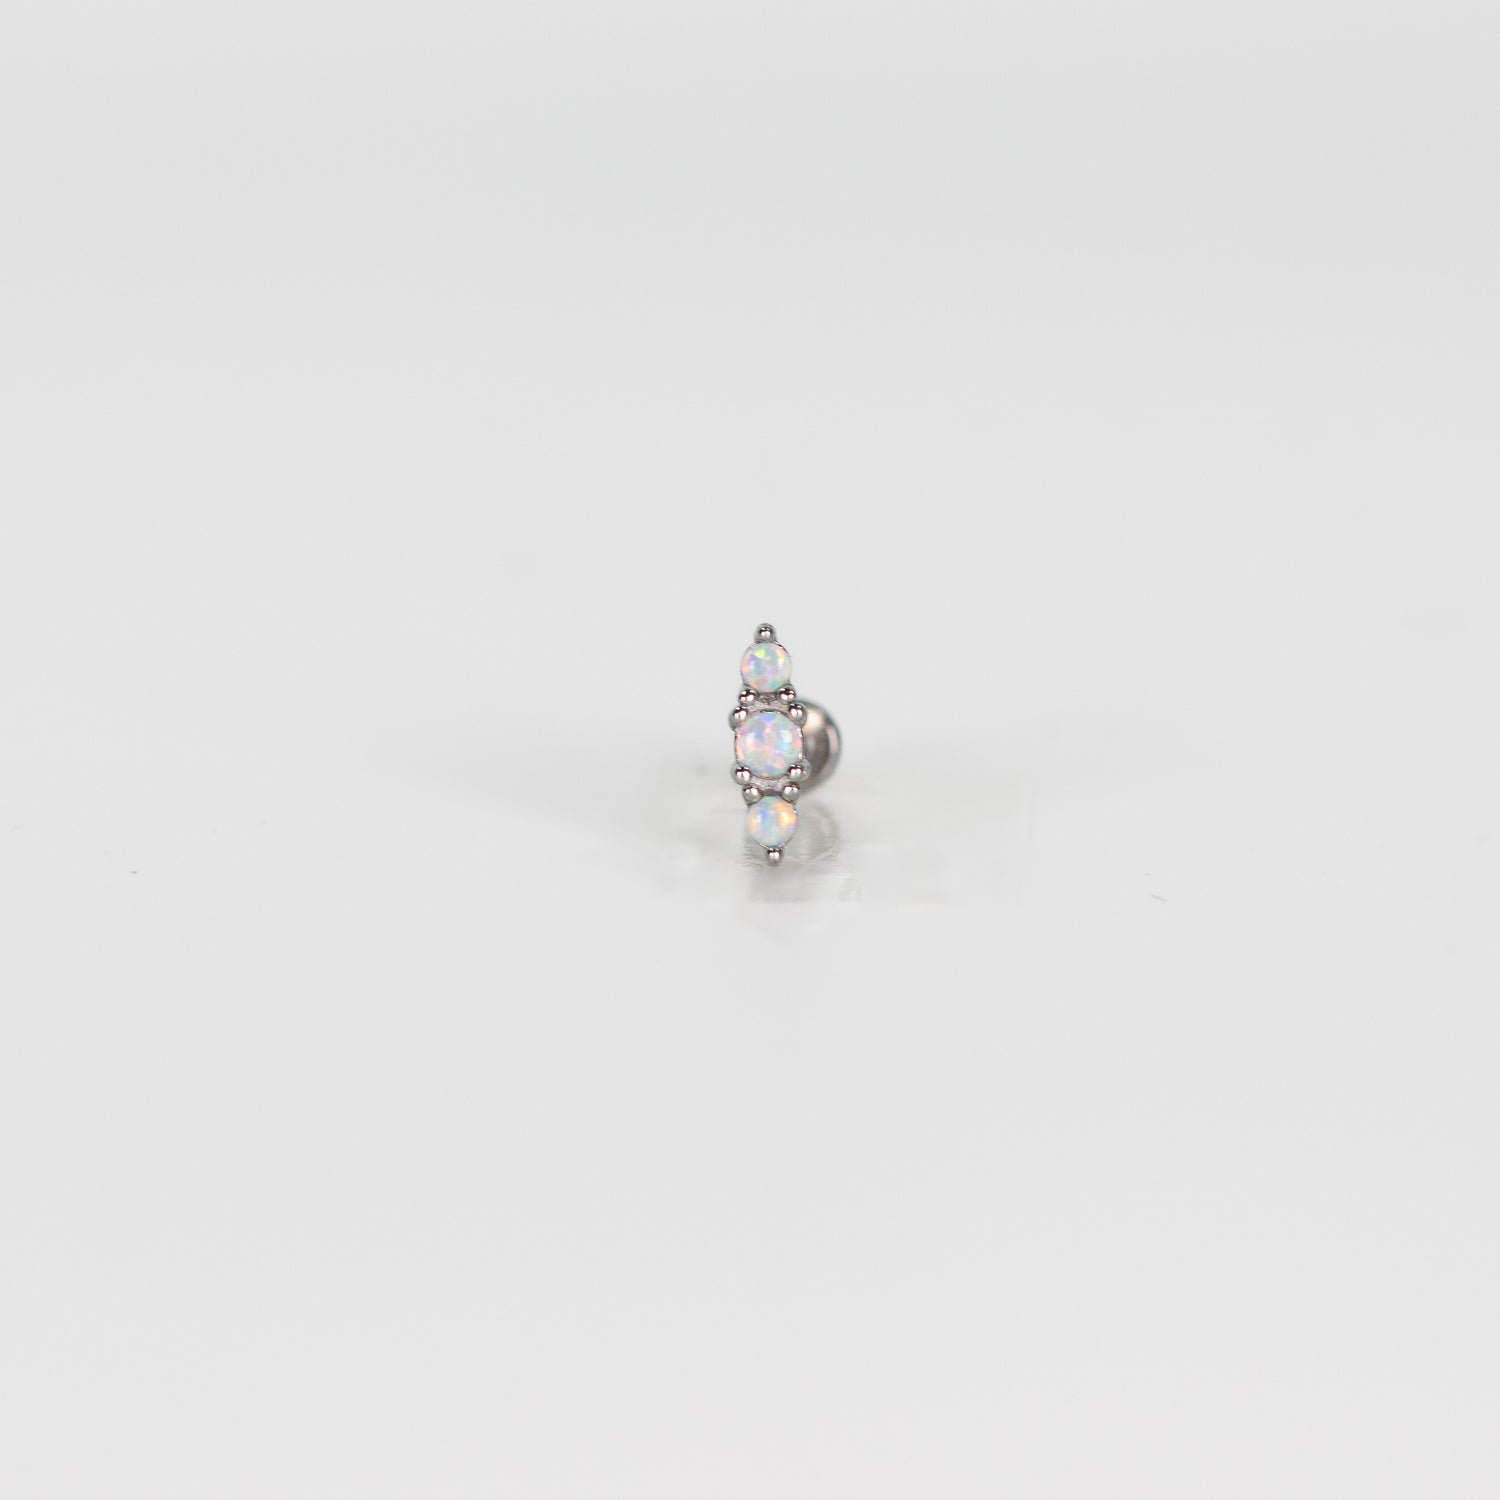 Bijoux pour piercing - Piercing opale - By Les Audacieuses